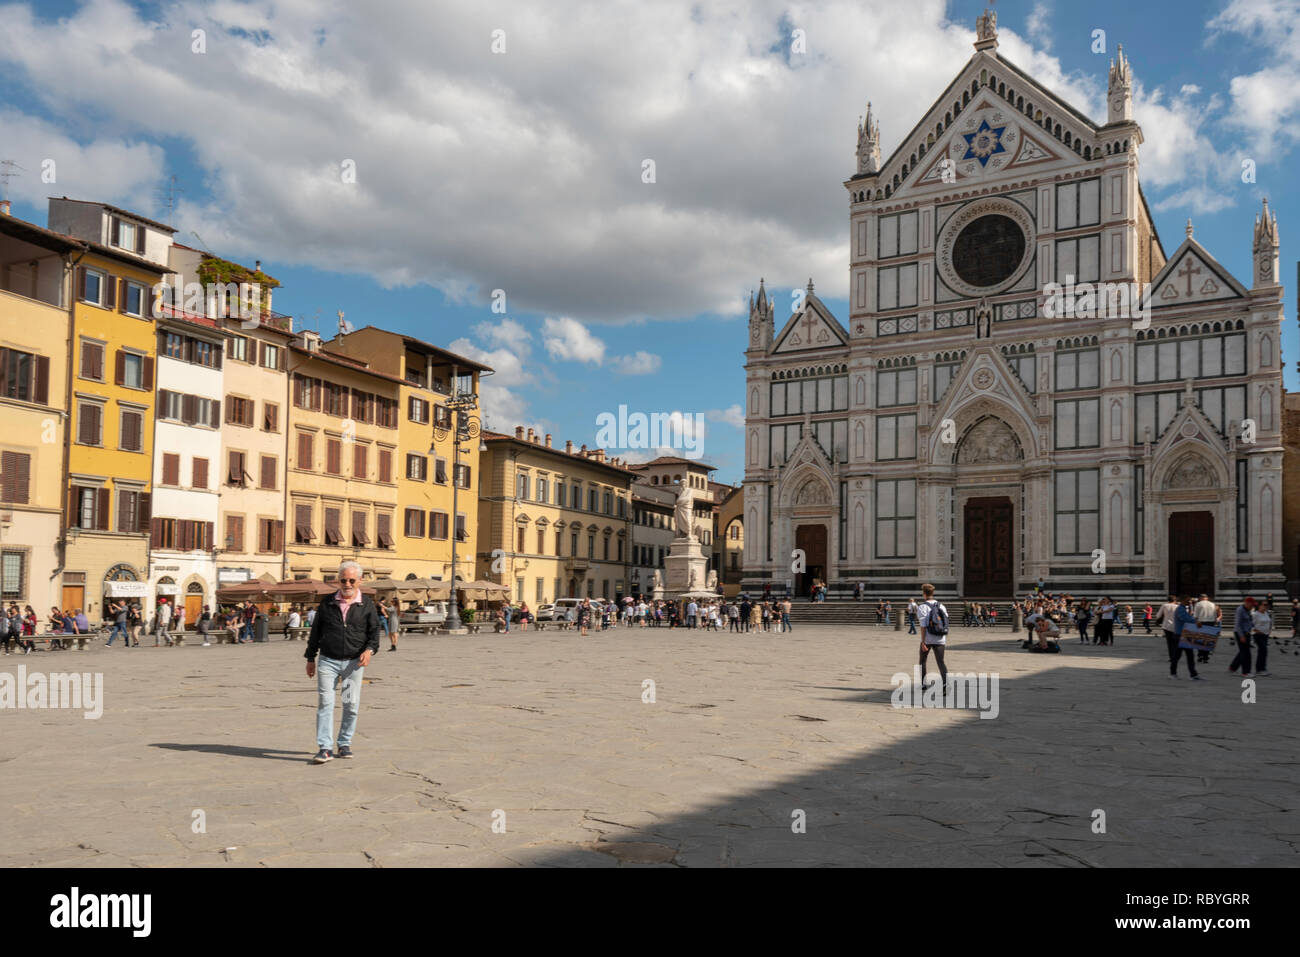 Piazza Santa Croce and Santa Croce Church, Florence, Italy Stock Photo